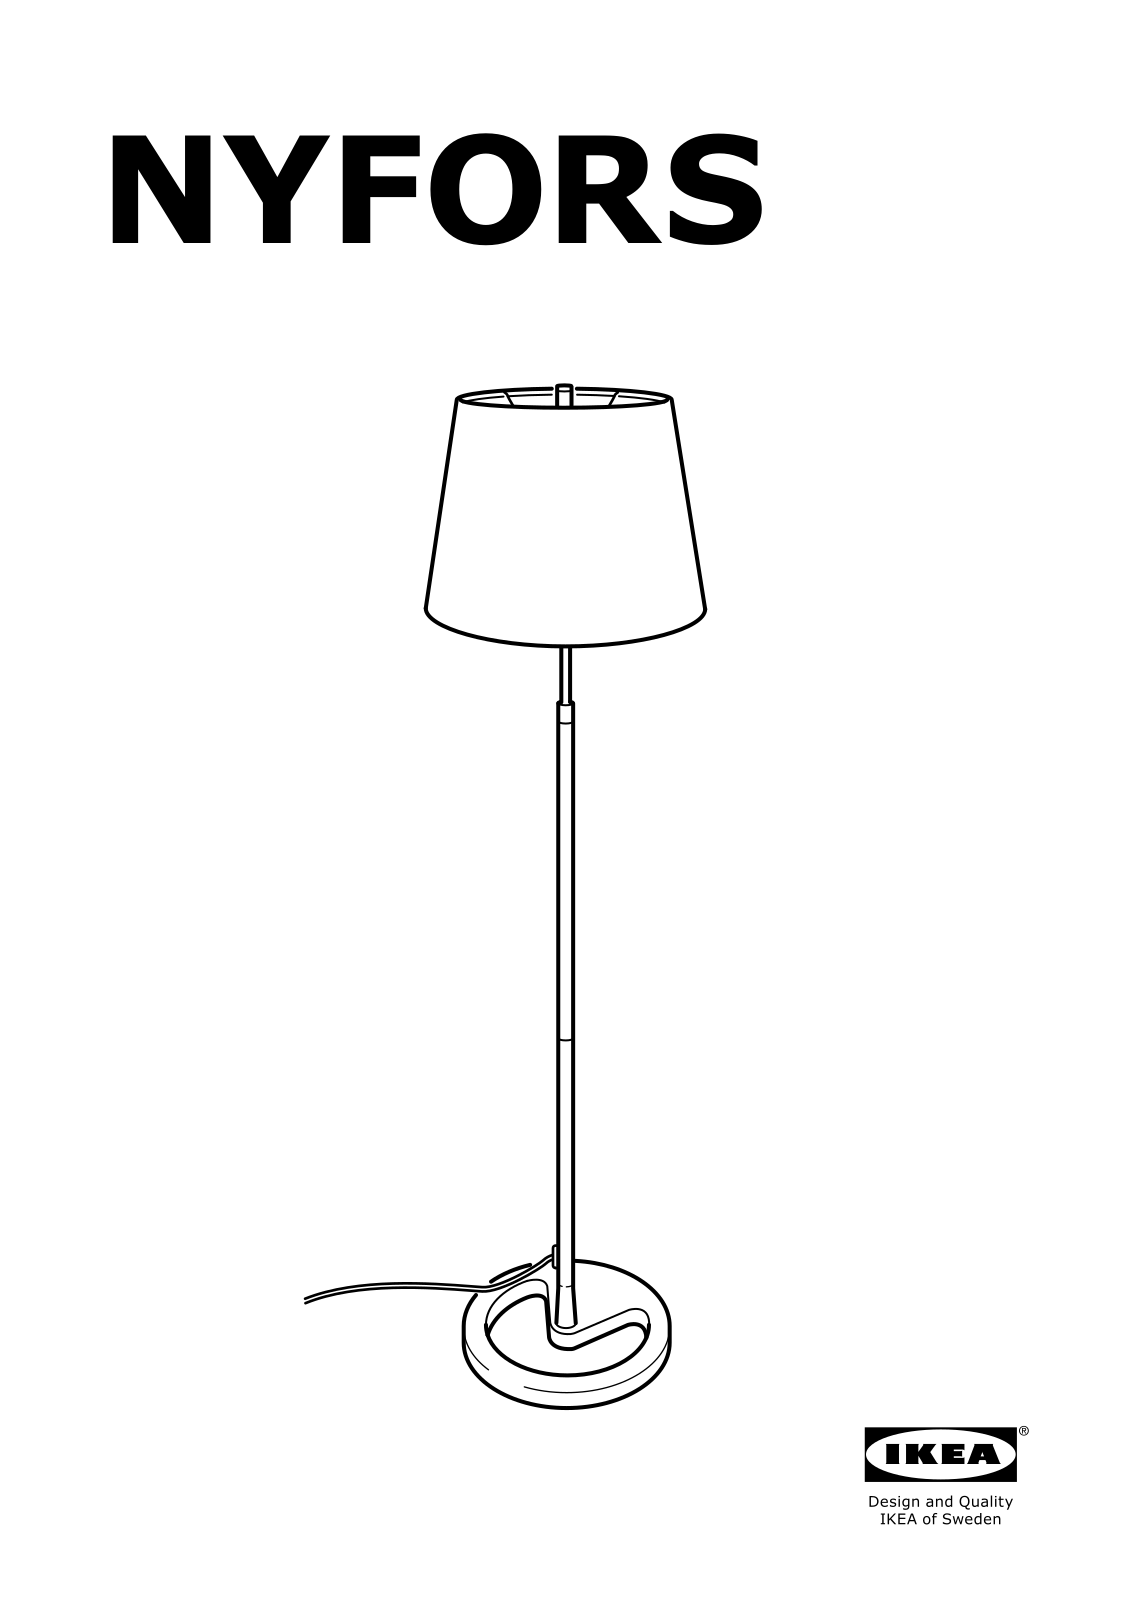 IKEA NYFORS User Manual